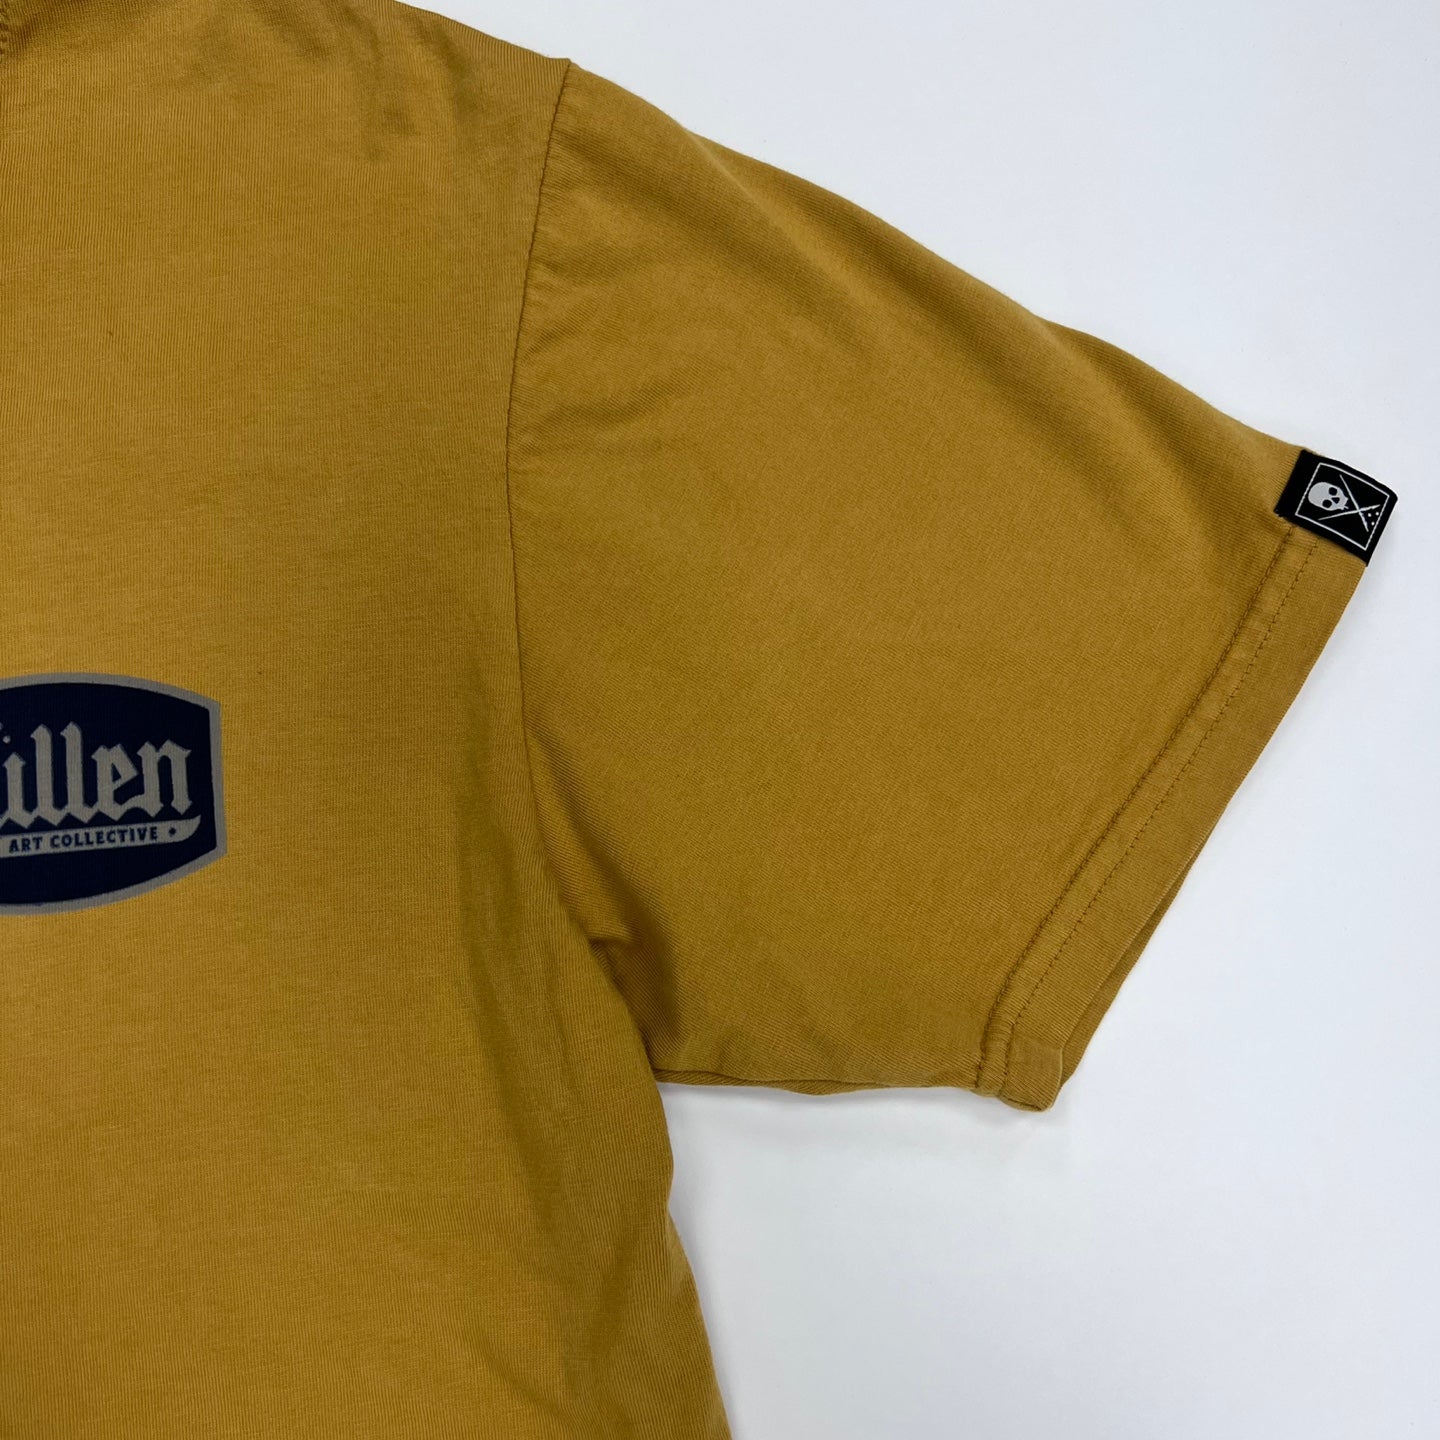 Sullen Art Collective Art Musta T-Shirt